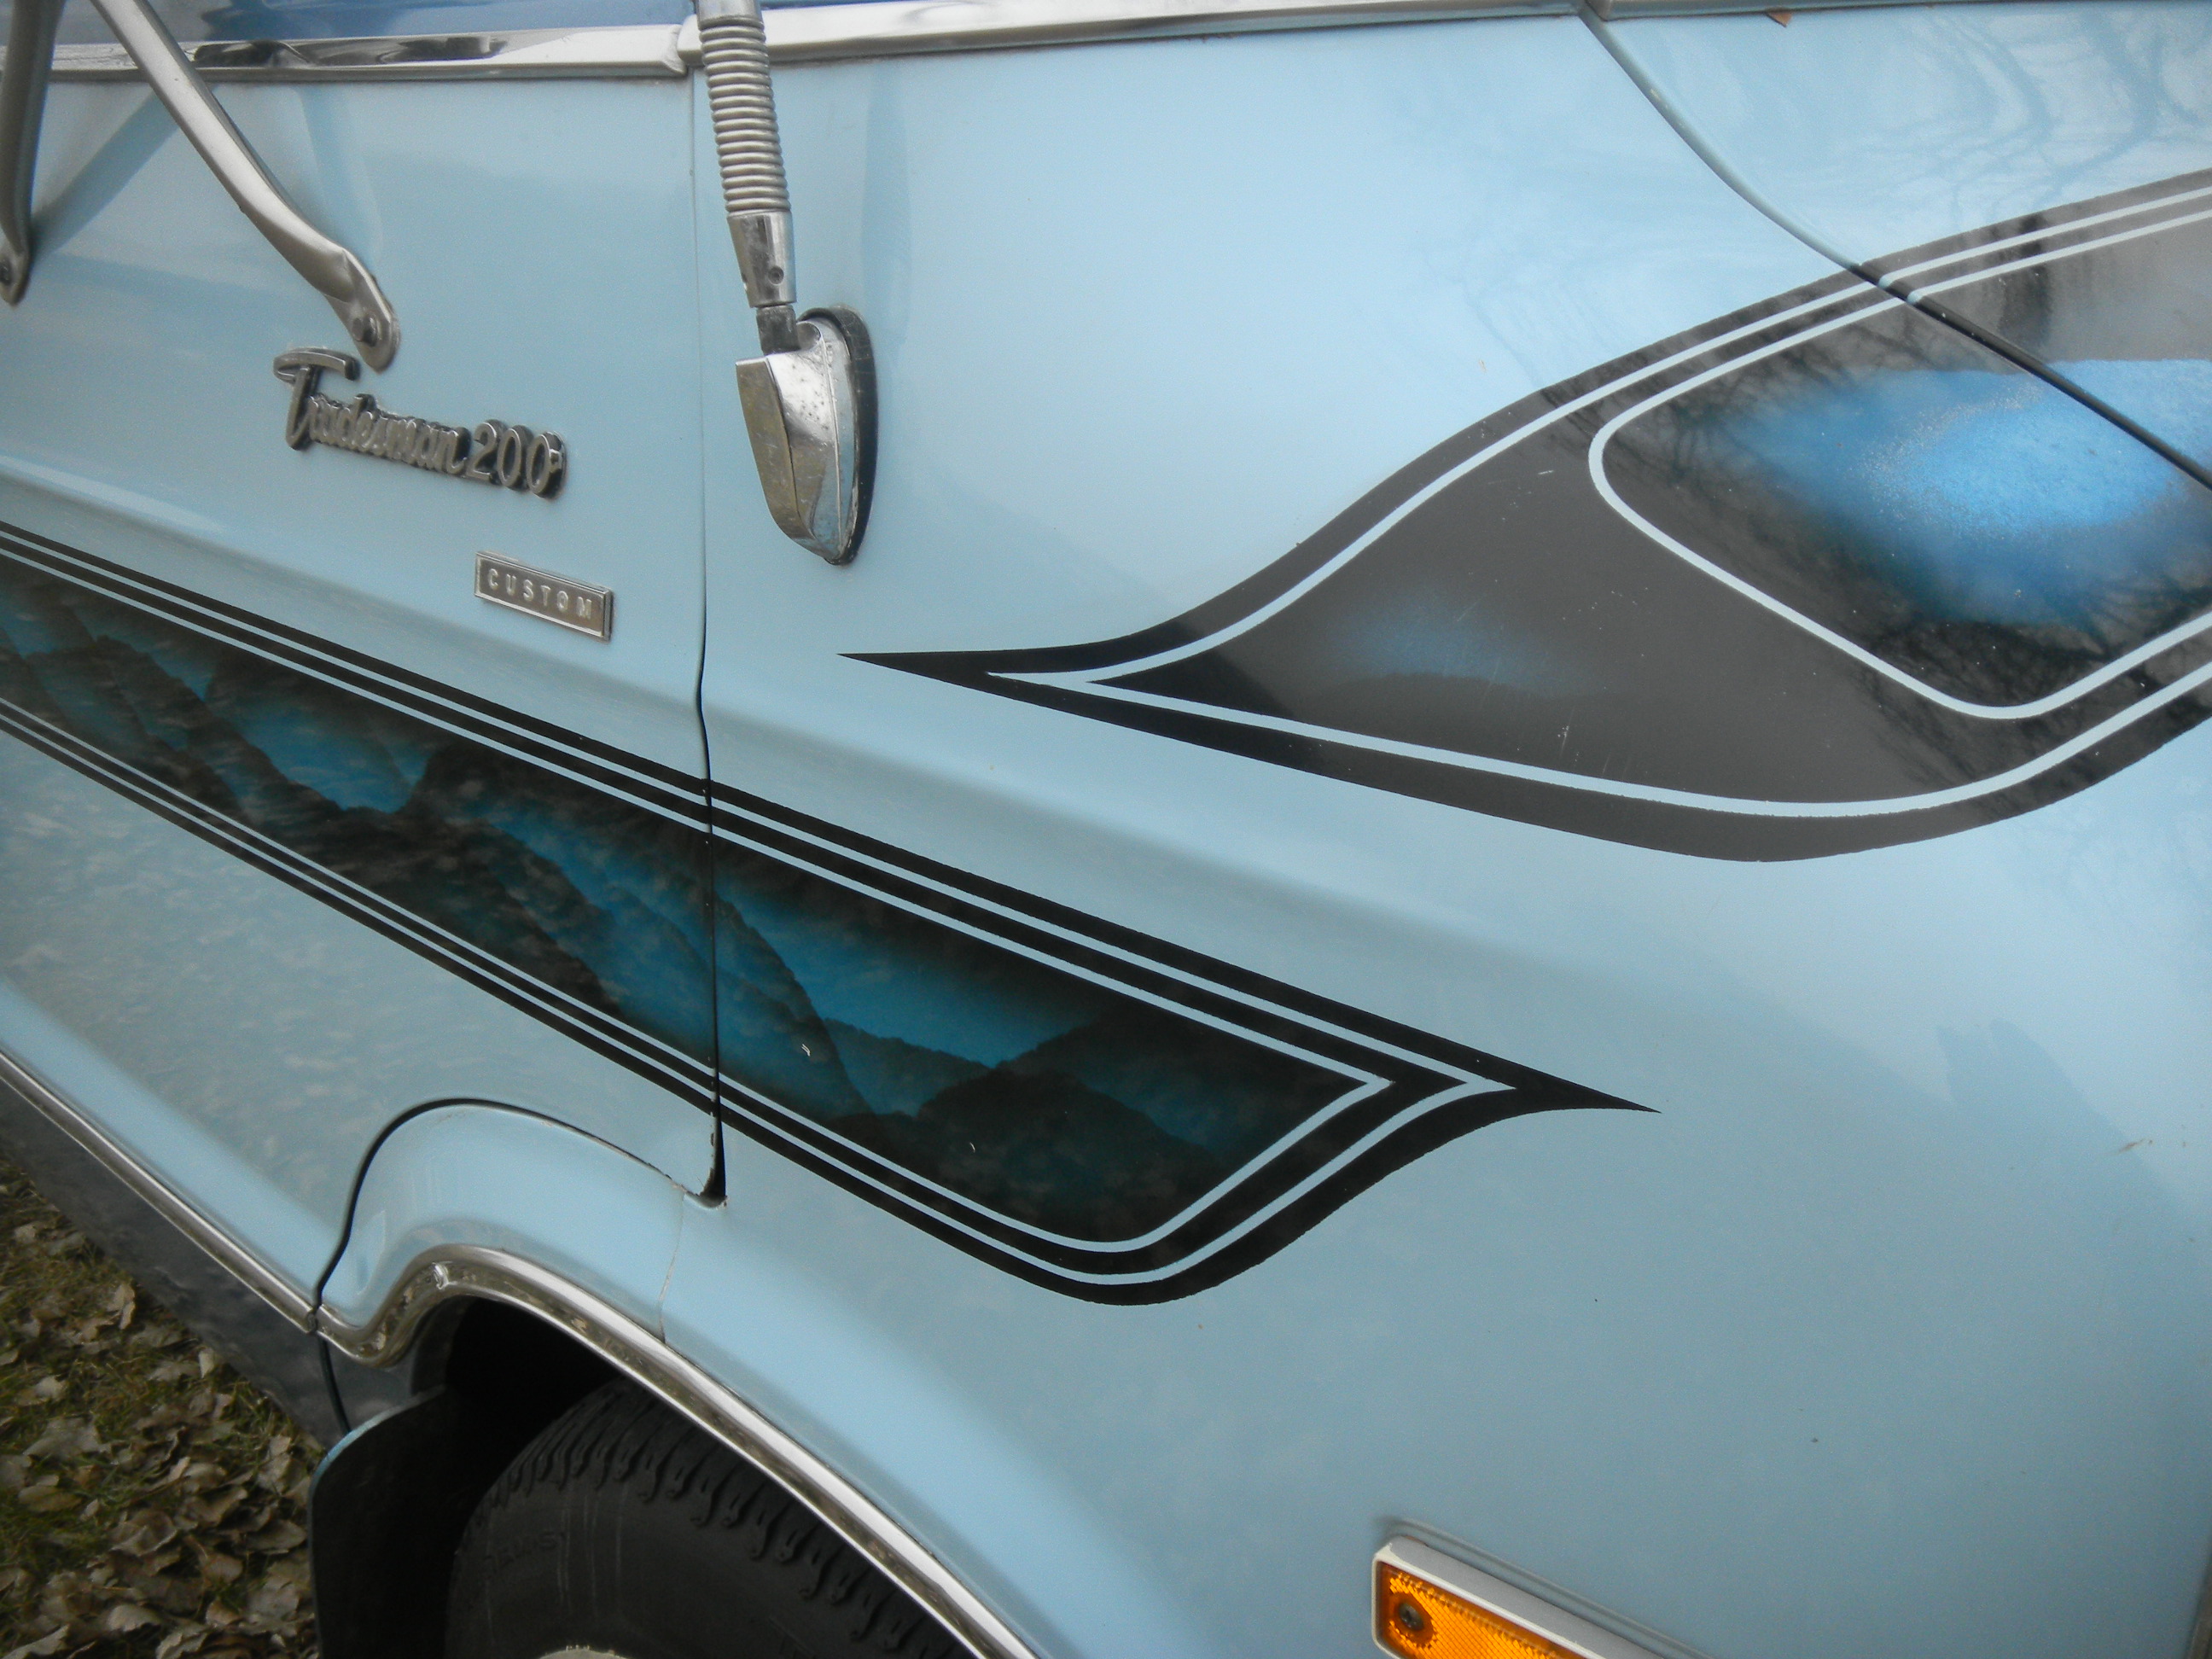 1977 Dodge Tradesman 200 custom maxivan. / Flickr - Partage de photos!